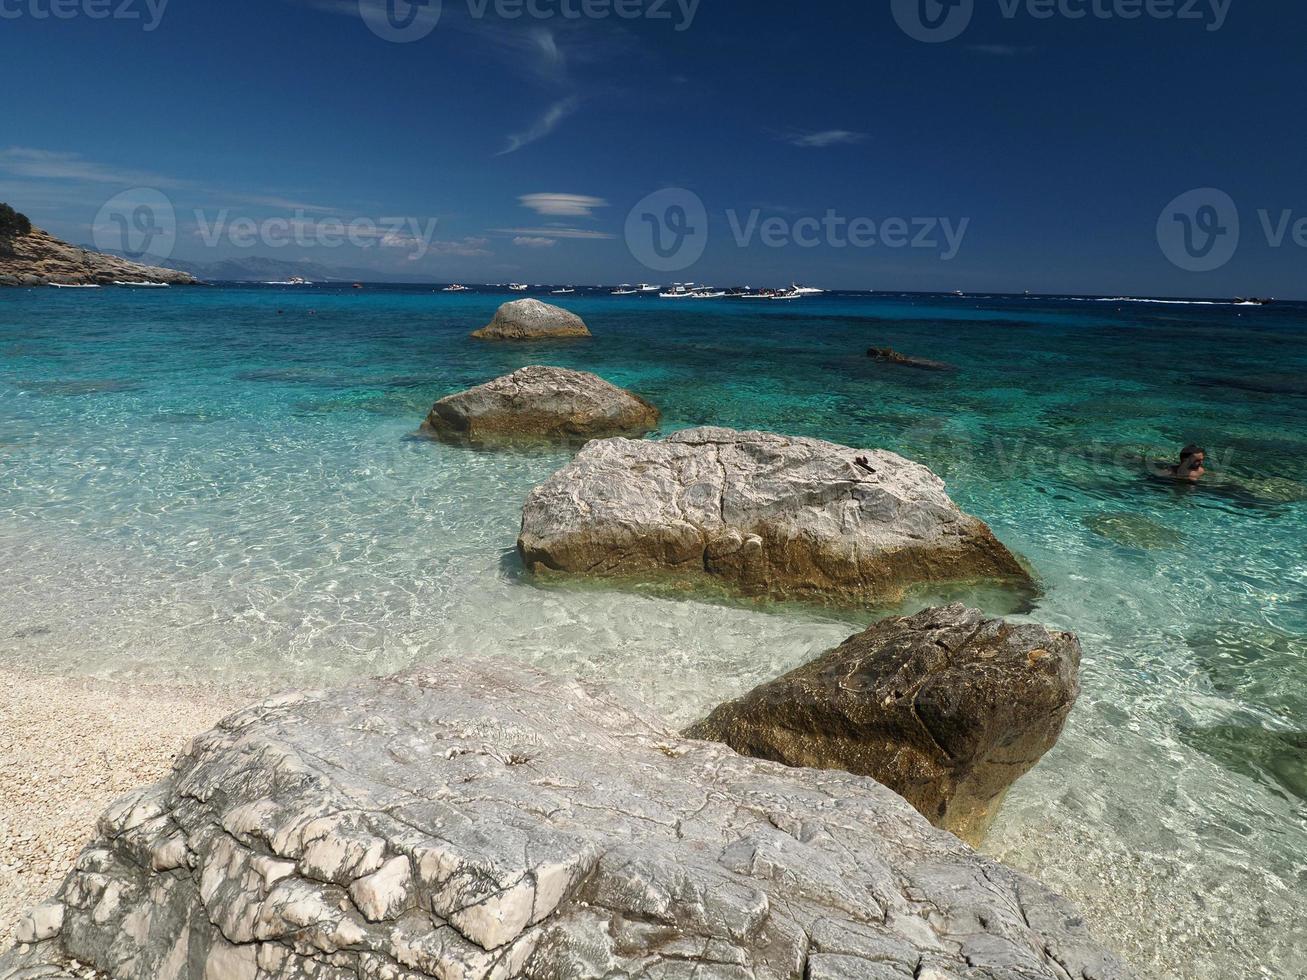 gabbiano baia baia dei gabbiani spiaggia sardegna Visualizza cristallo acque foto